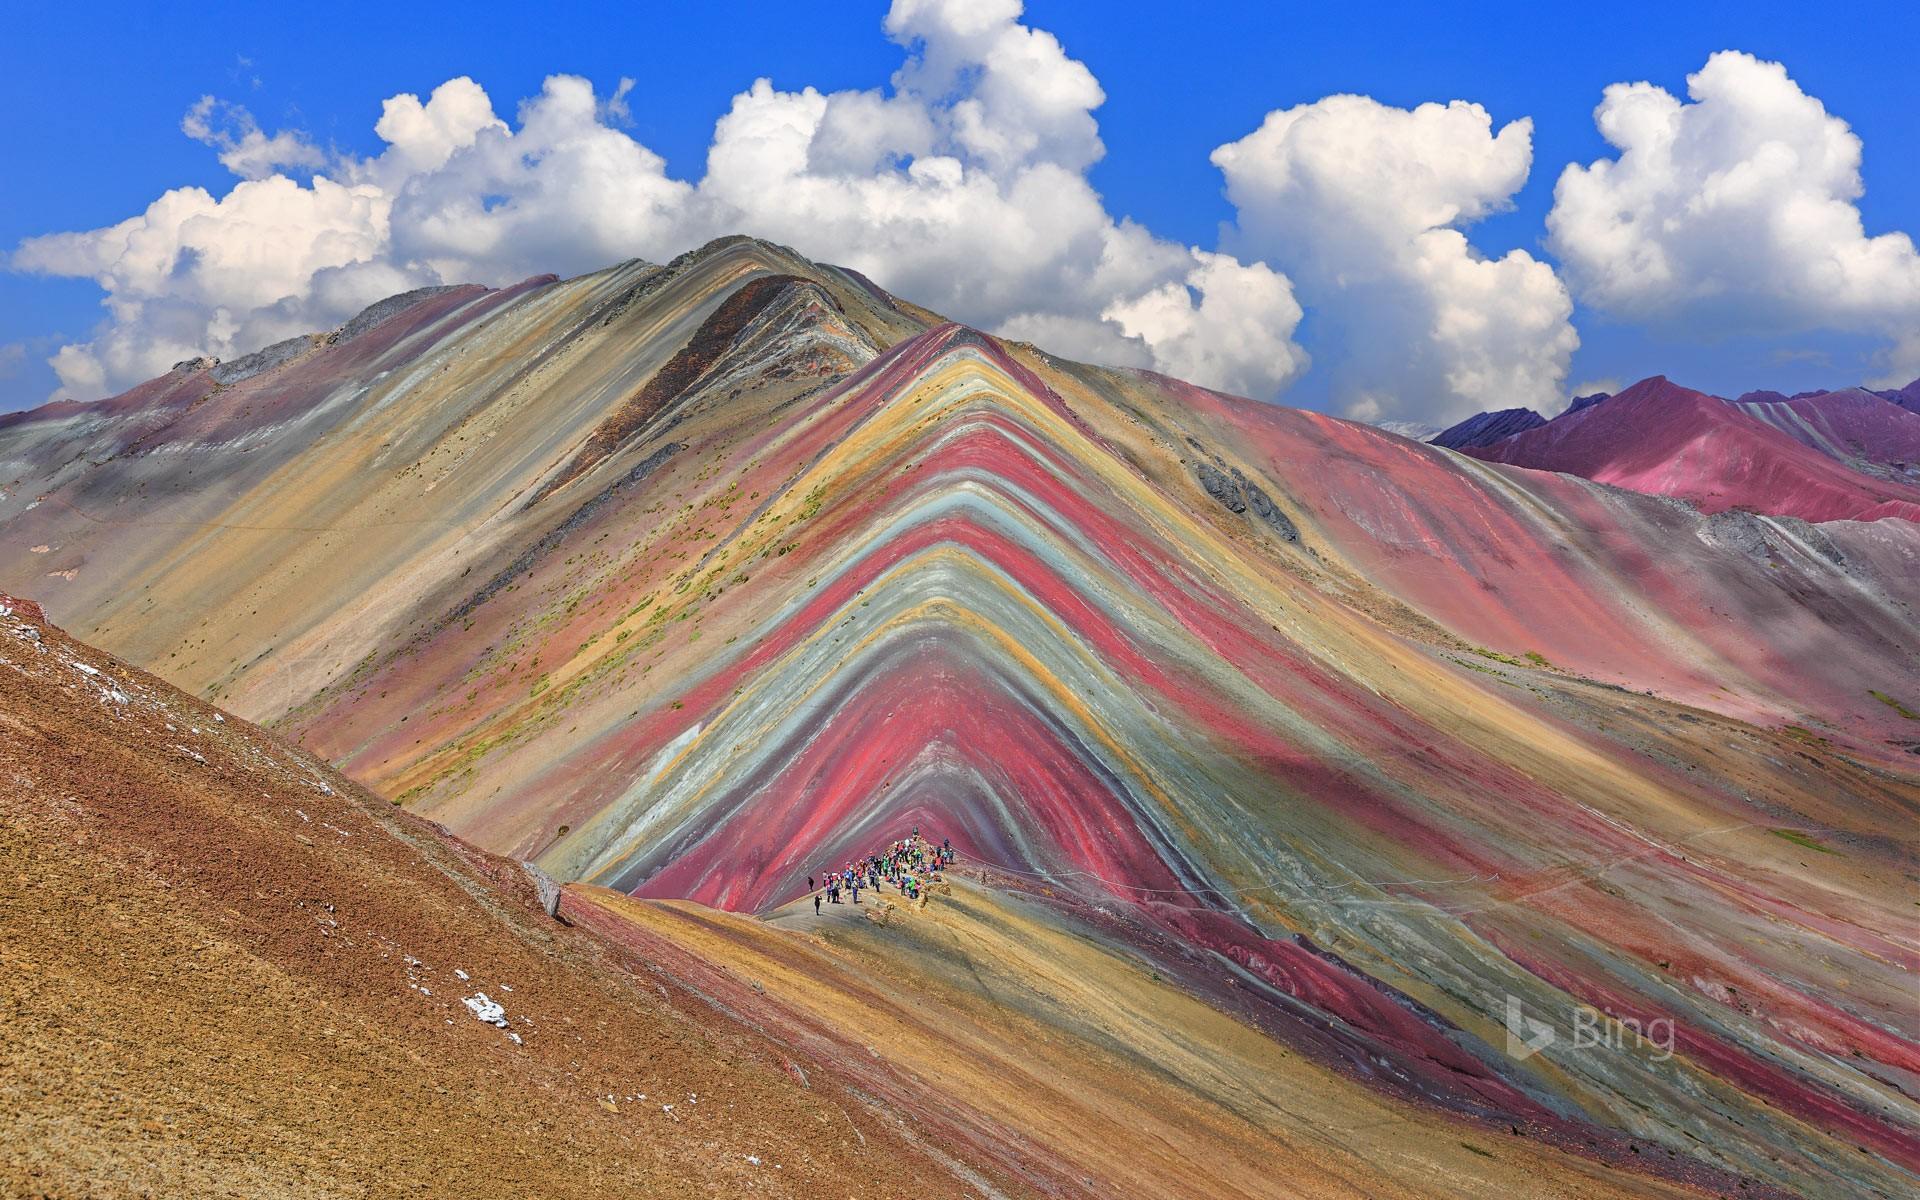 Vinicunca Mountain in the Cusco Region of Peru